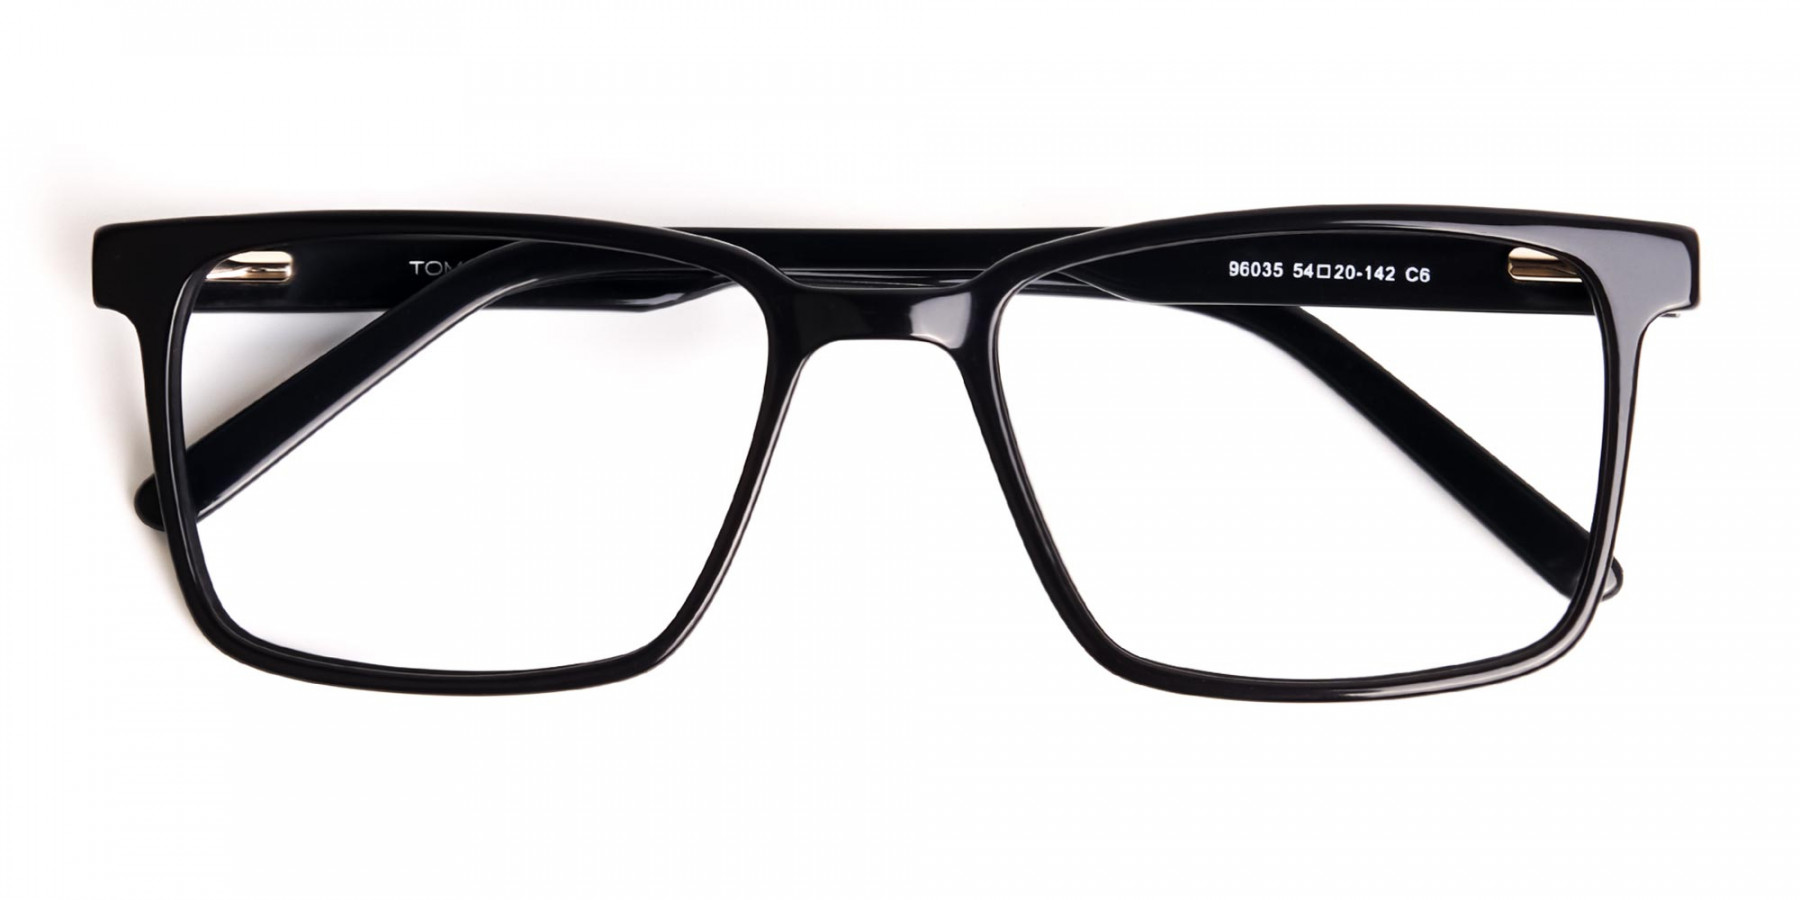 Black-Dark-Purple-Rectangular-Glasses-frames-1